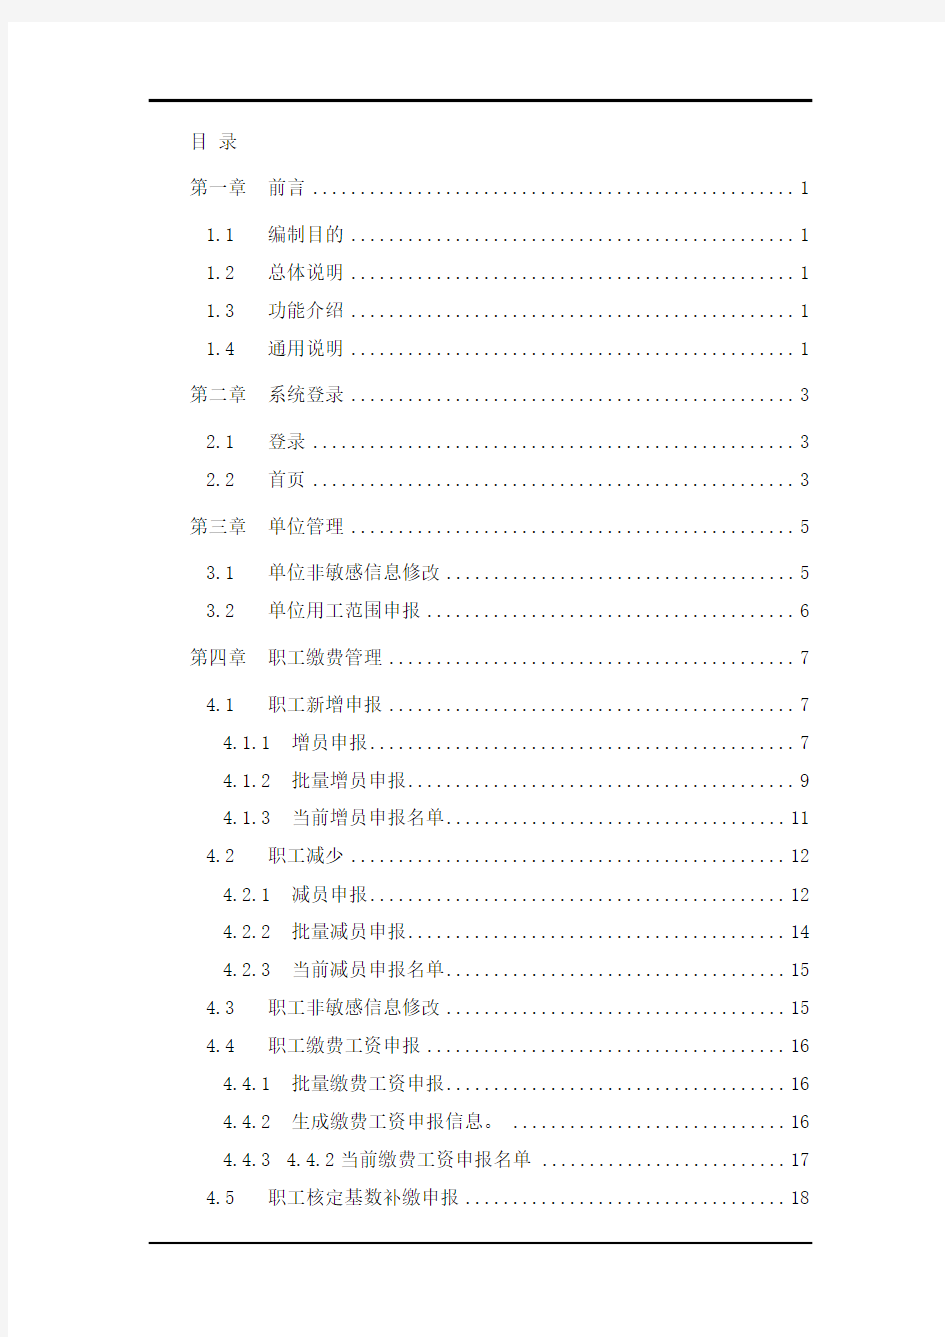 天津人社企业网上服务大厅系统V2用户手册(供企业用户使用)